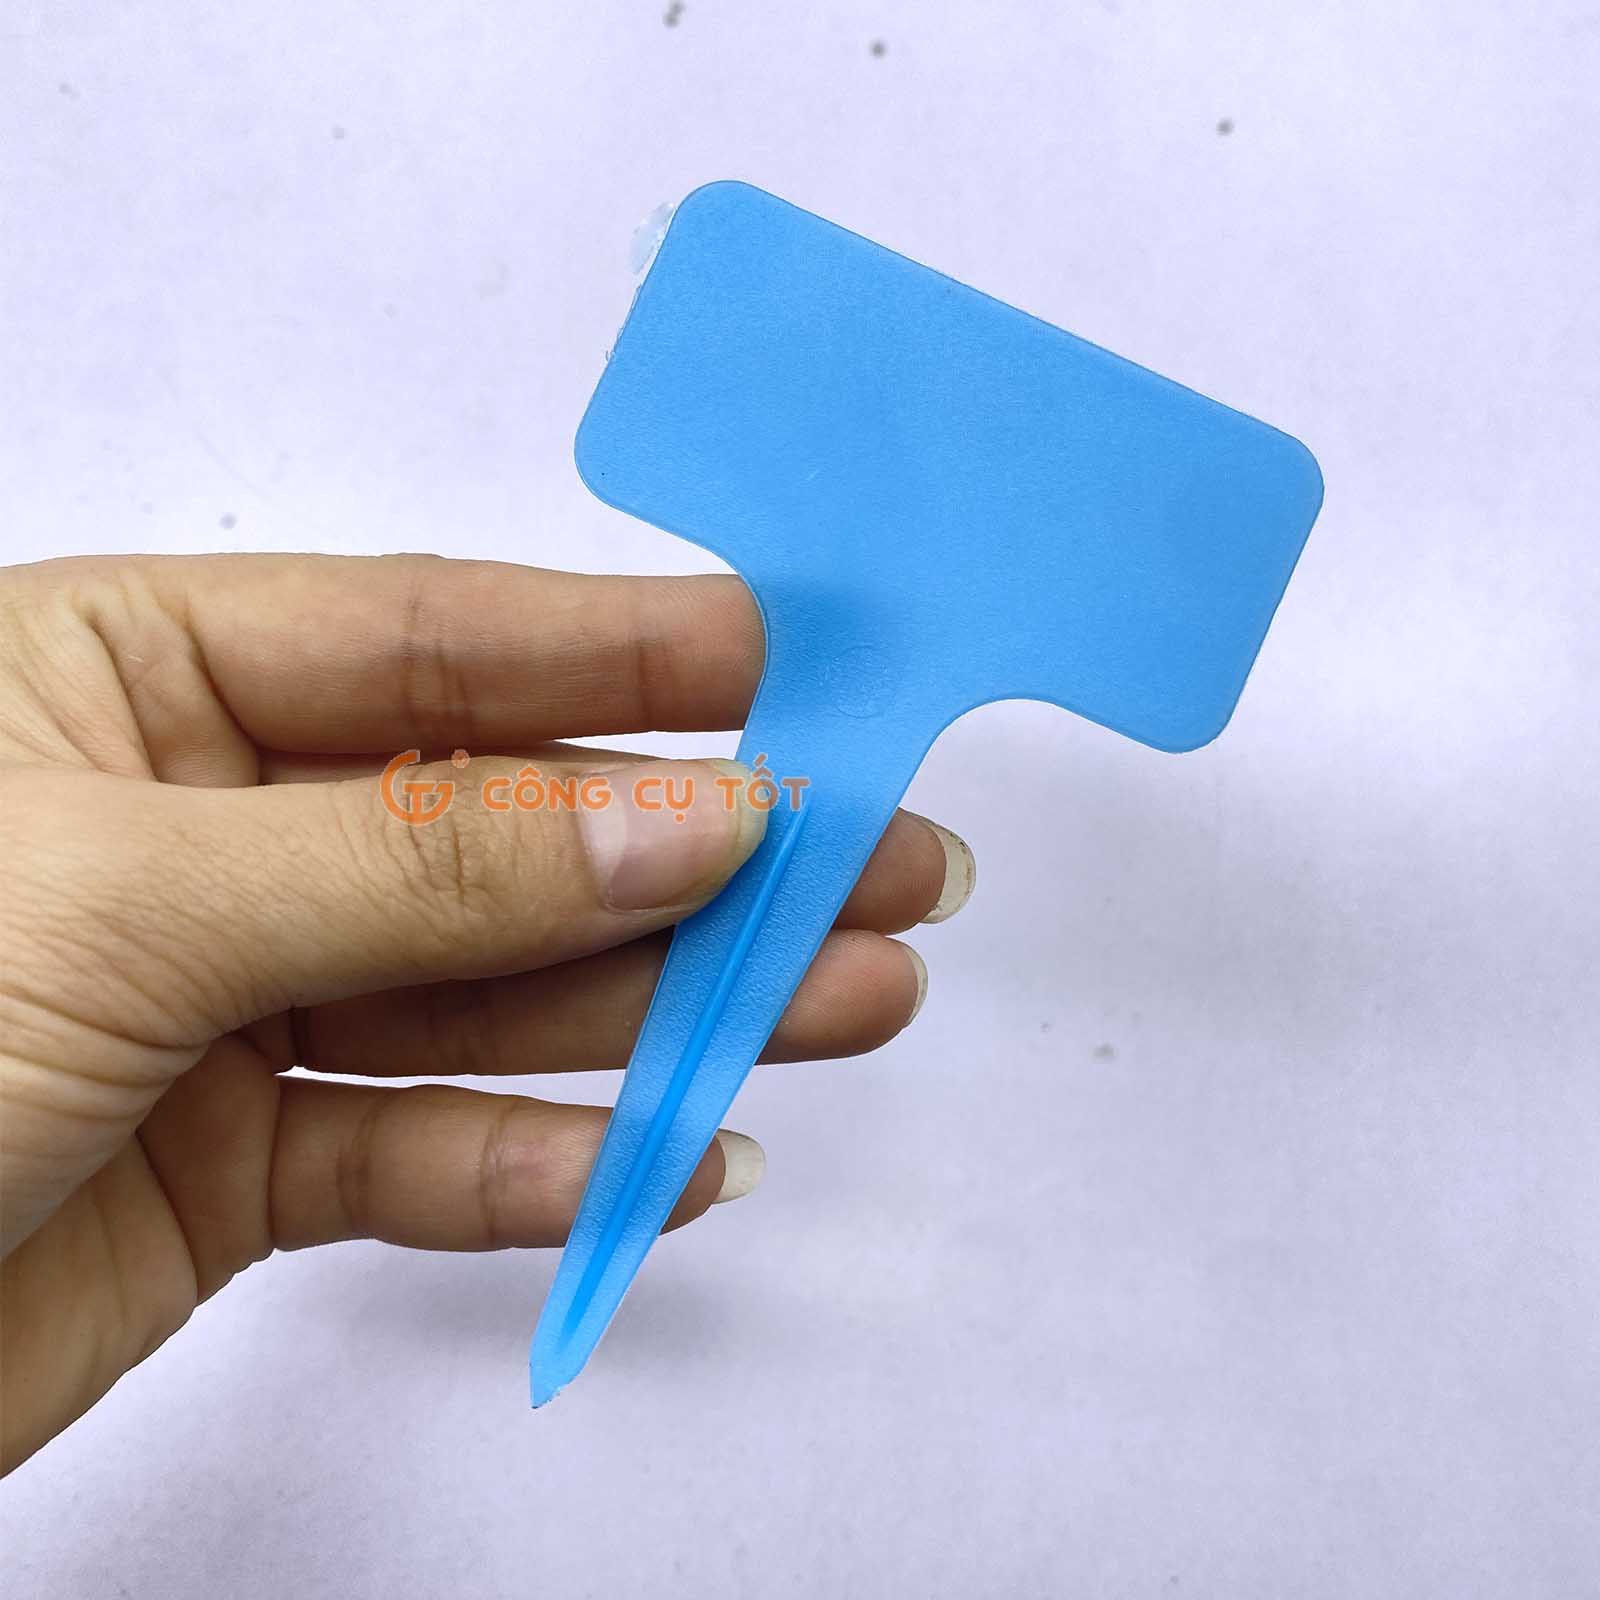 Thẻ ghi tên cây cắm đất hình chữ T 6x10cm bằng nhựa PP màu xanh trời